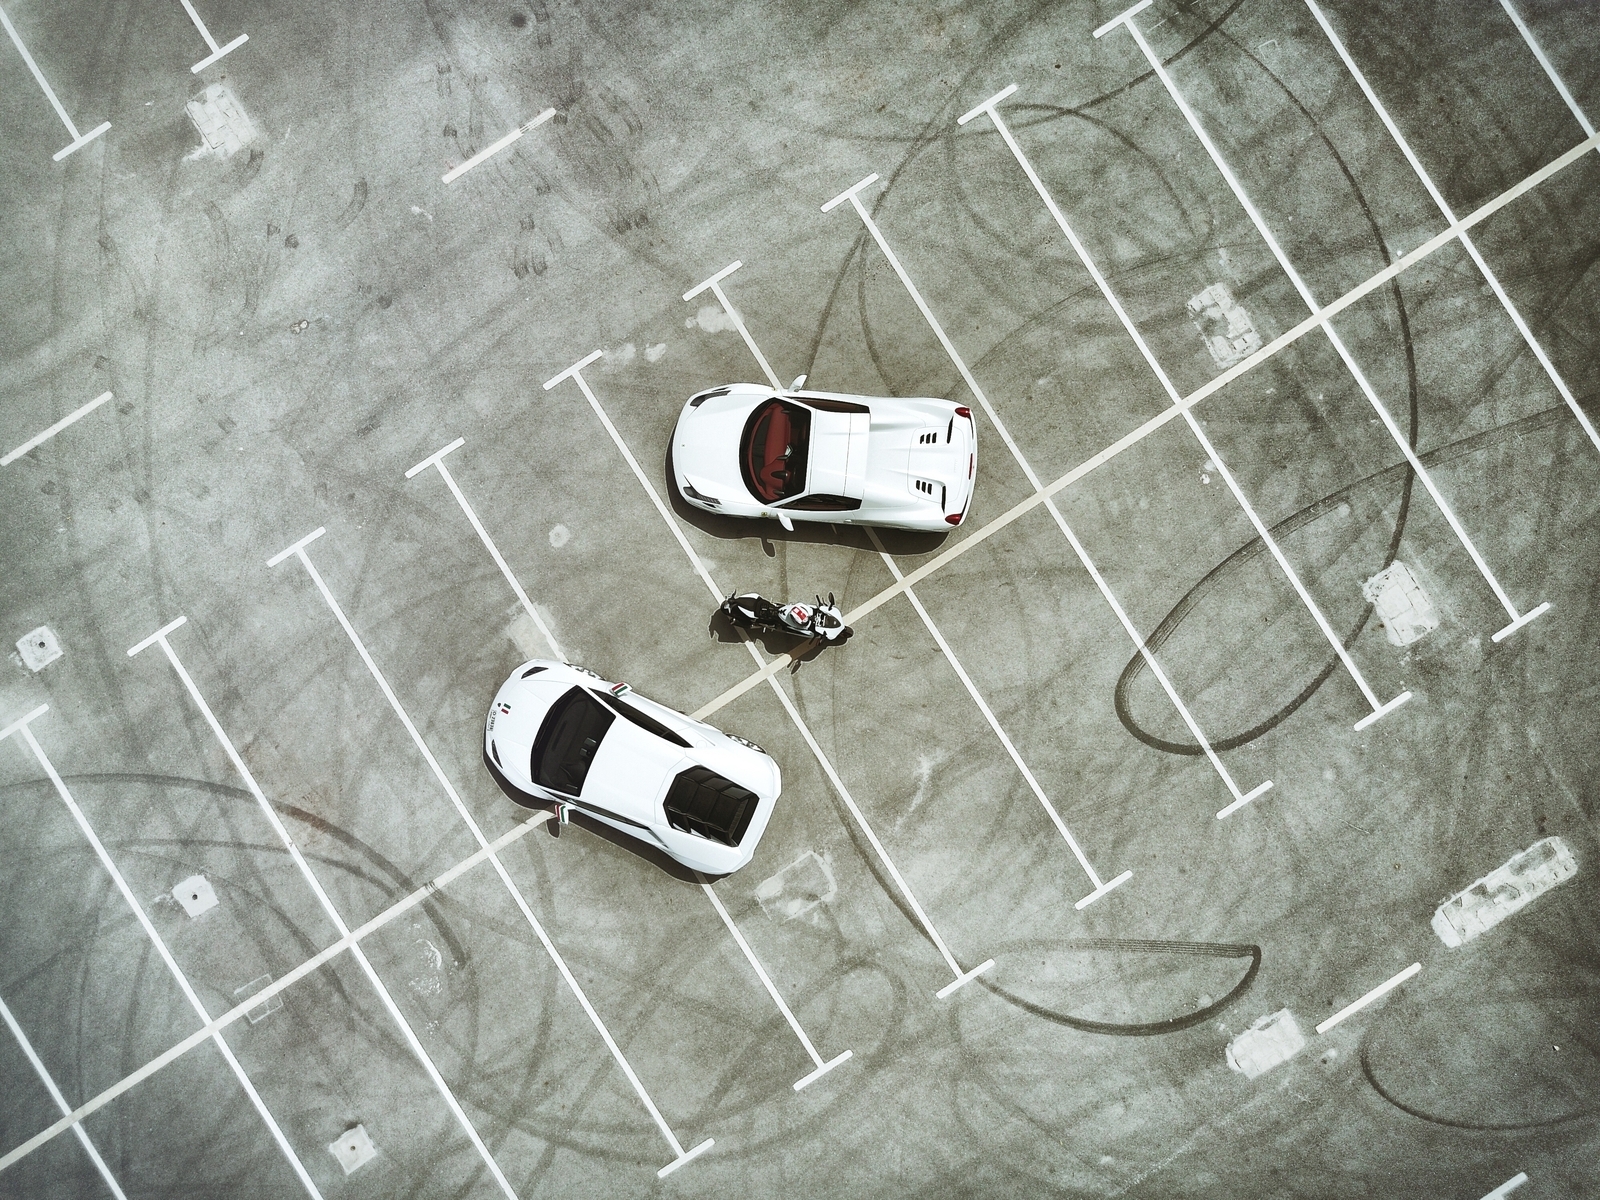 Картинка: Машины, мотоцикл, парковка, вид сверху, белые, следы шин